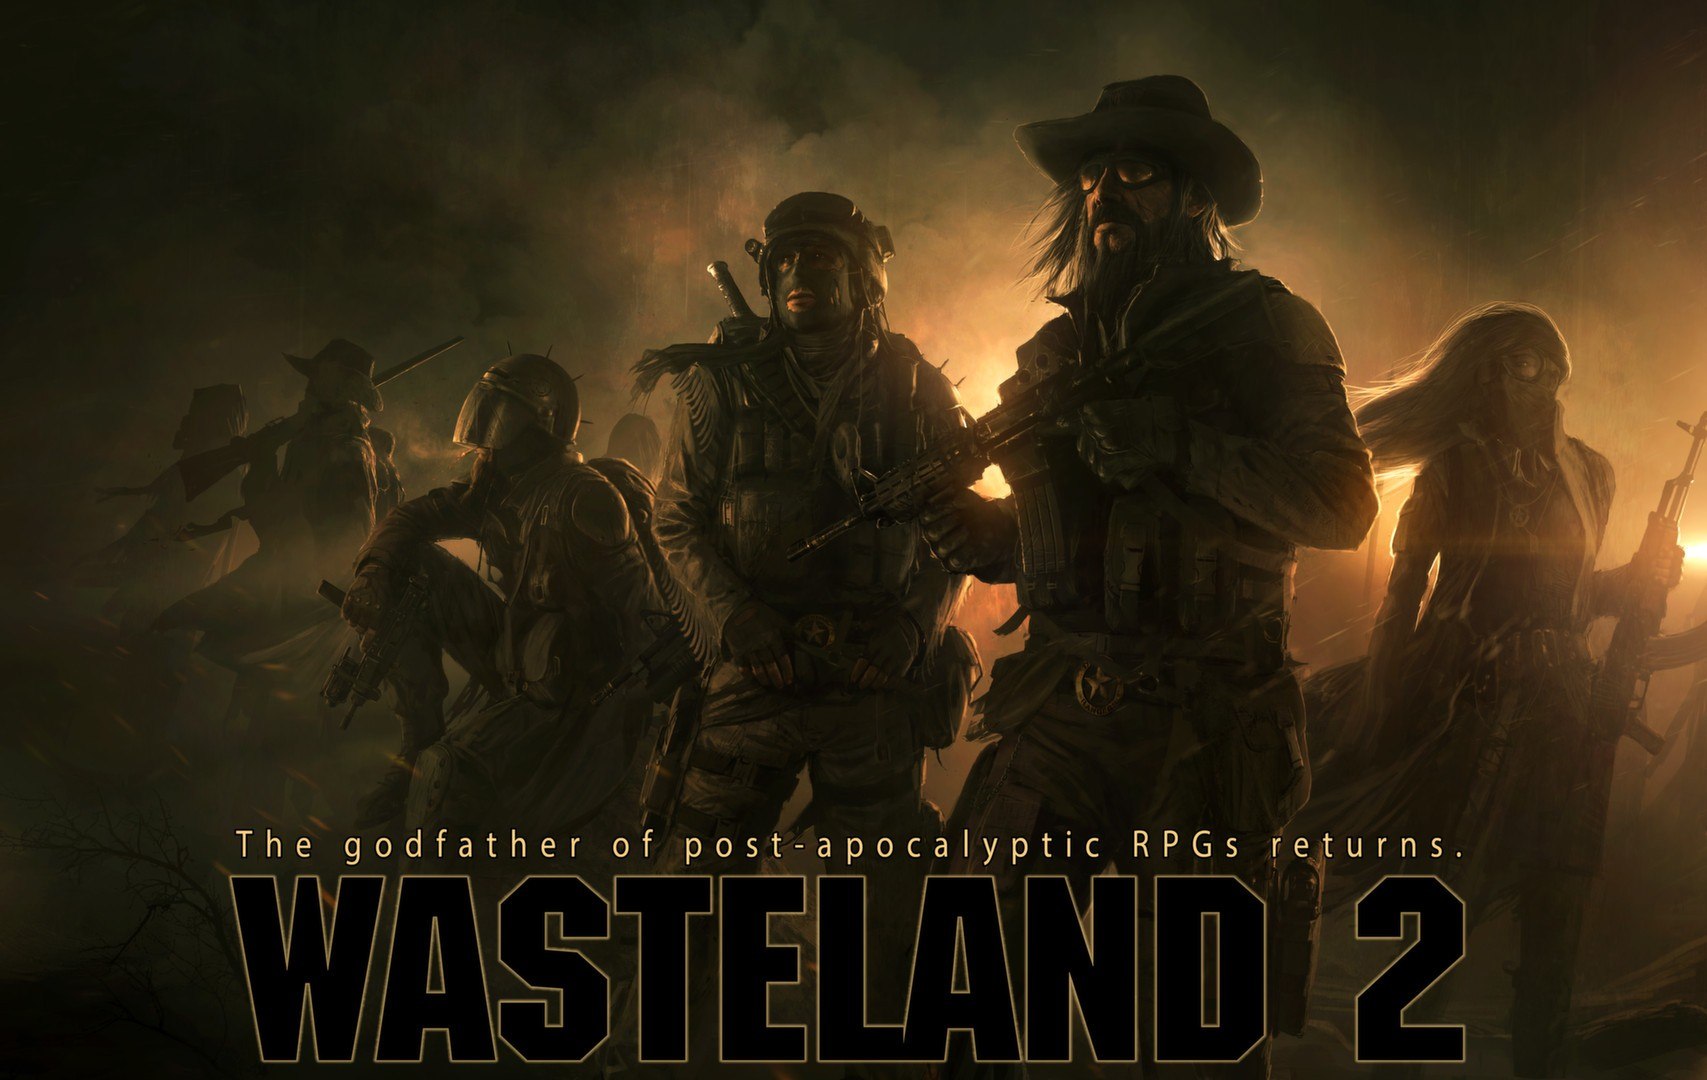 Wasteland 2: Director's Cut EU XBOX One CD Key 5.08 USD